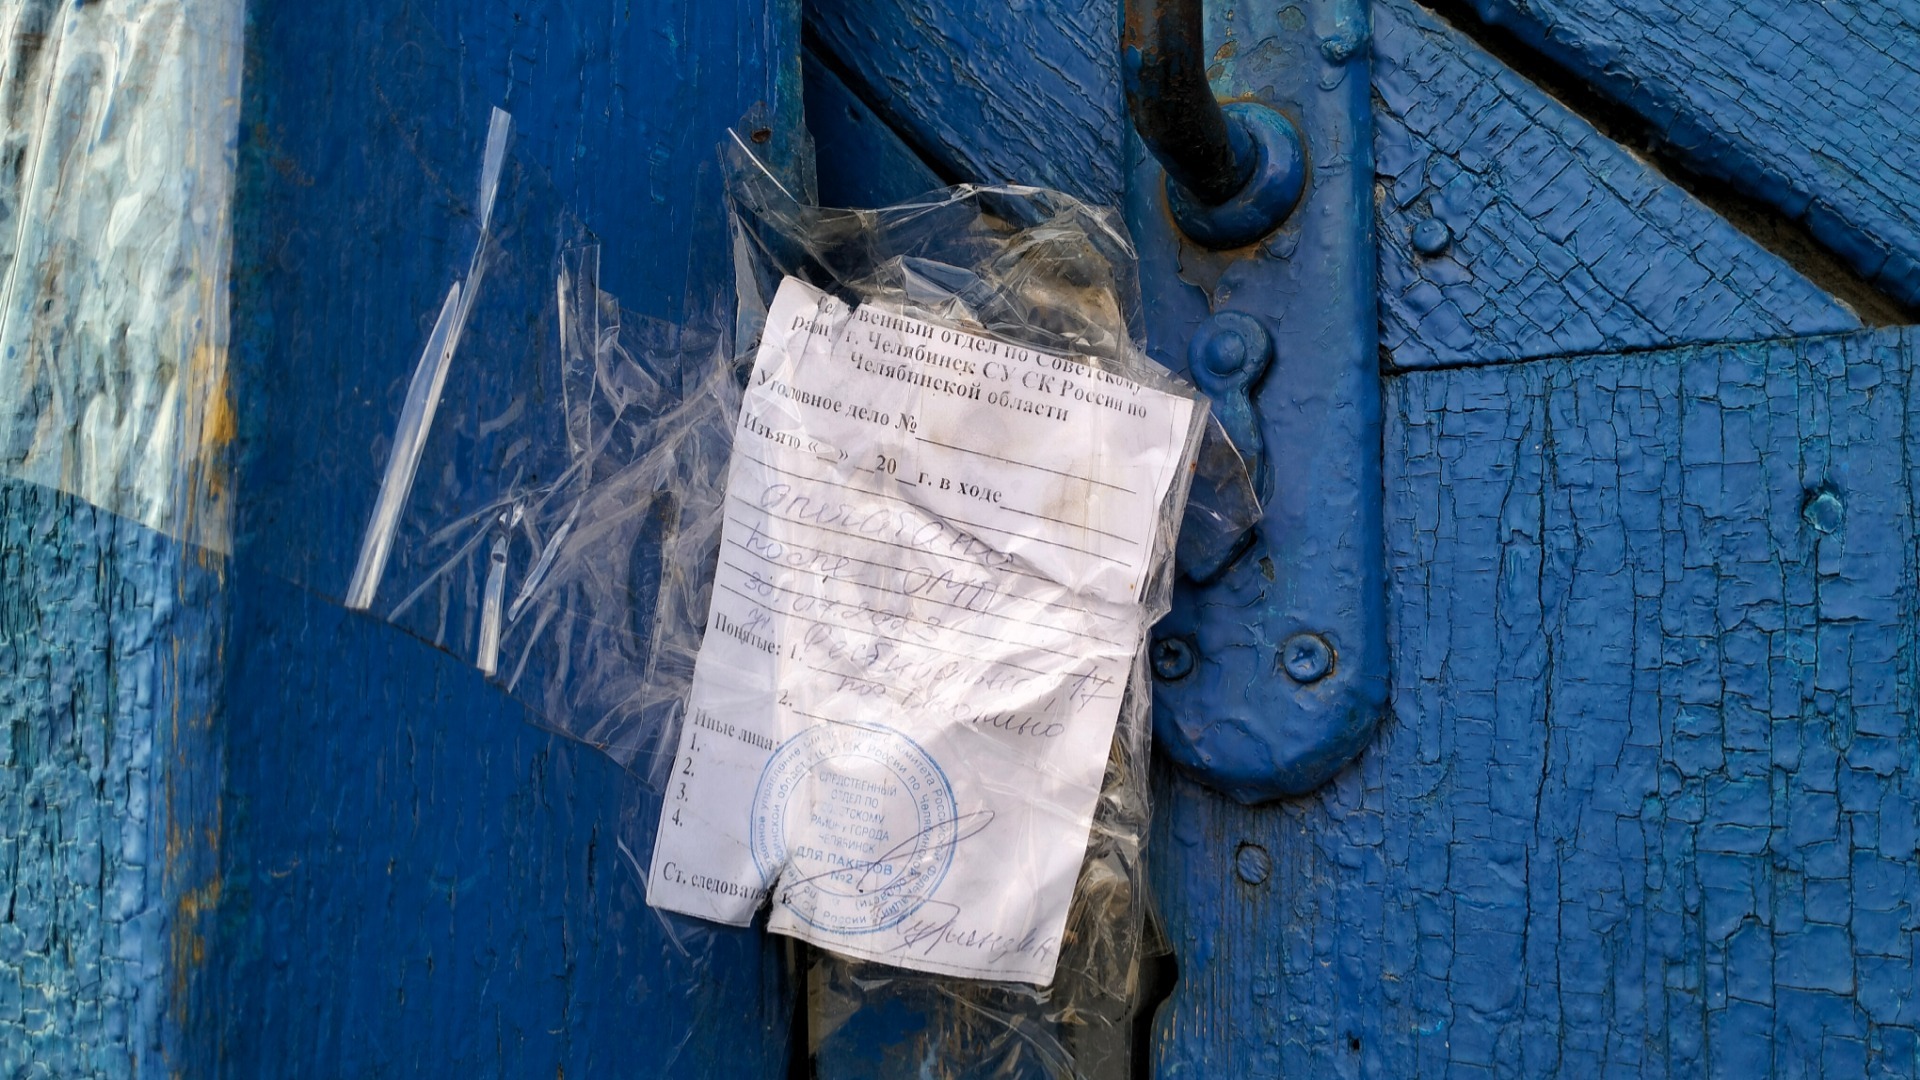 Дом Ческидовых в поселке Смолино опечатан следователями СК РФ